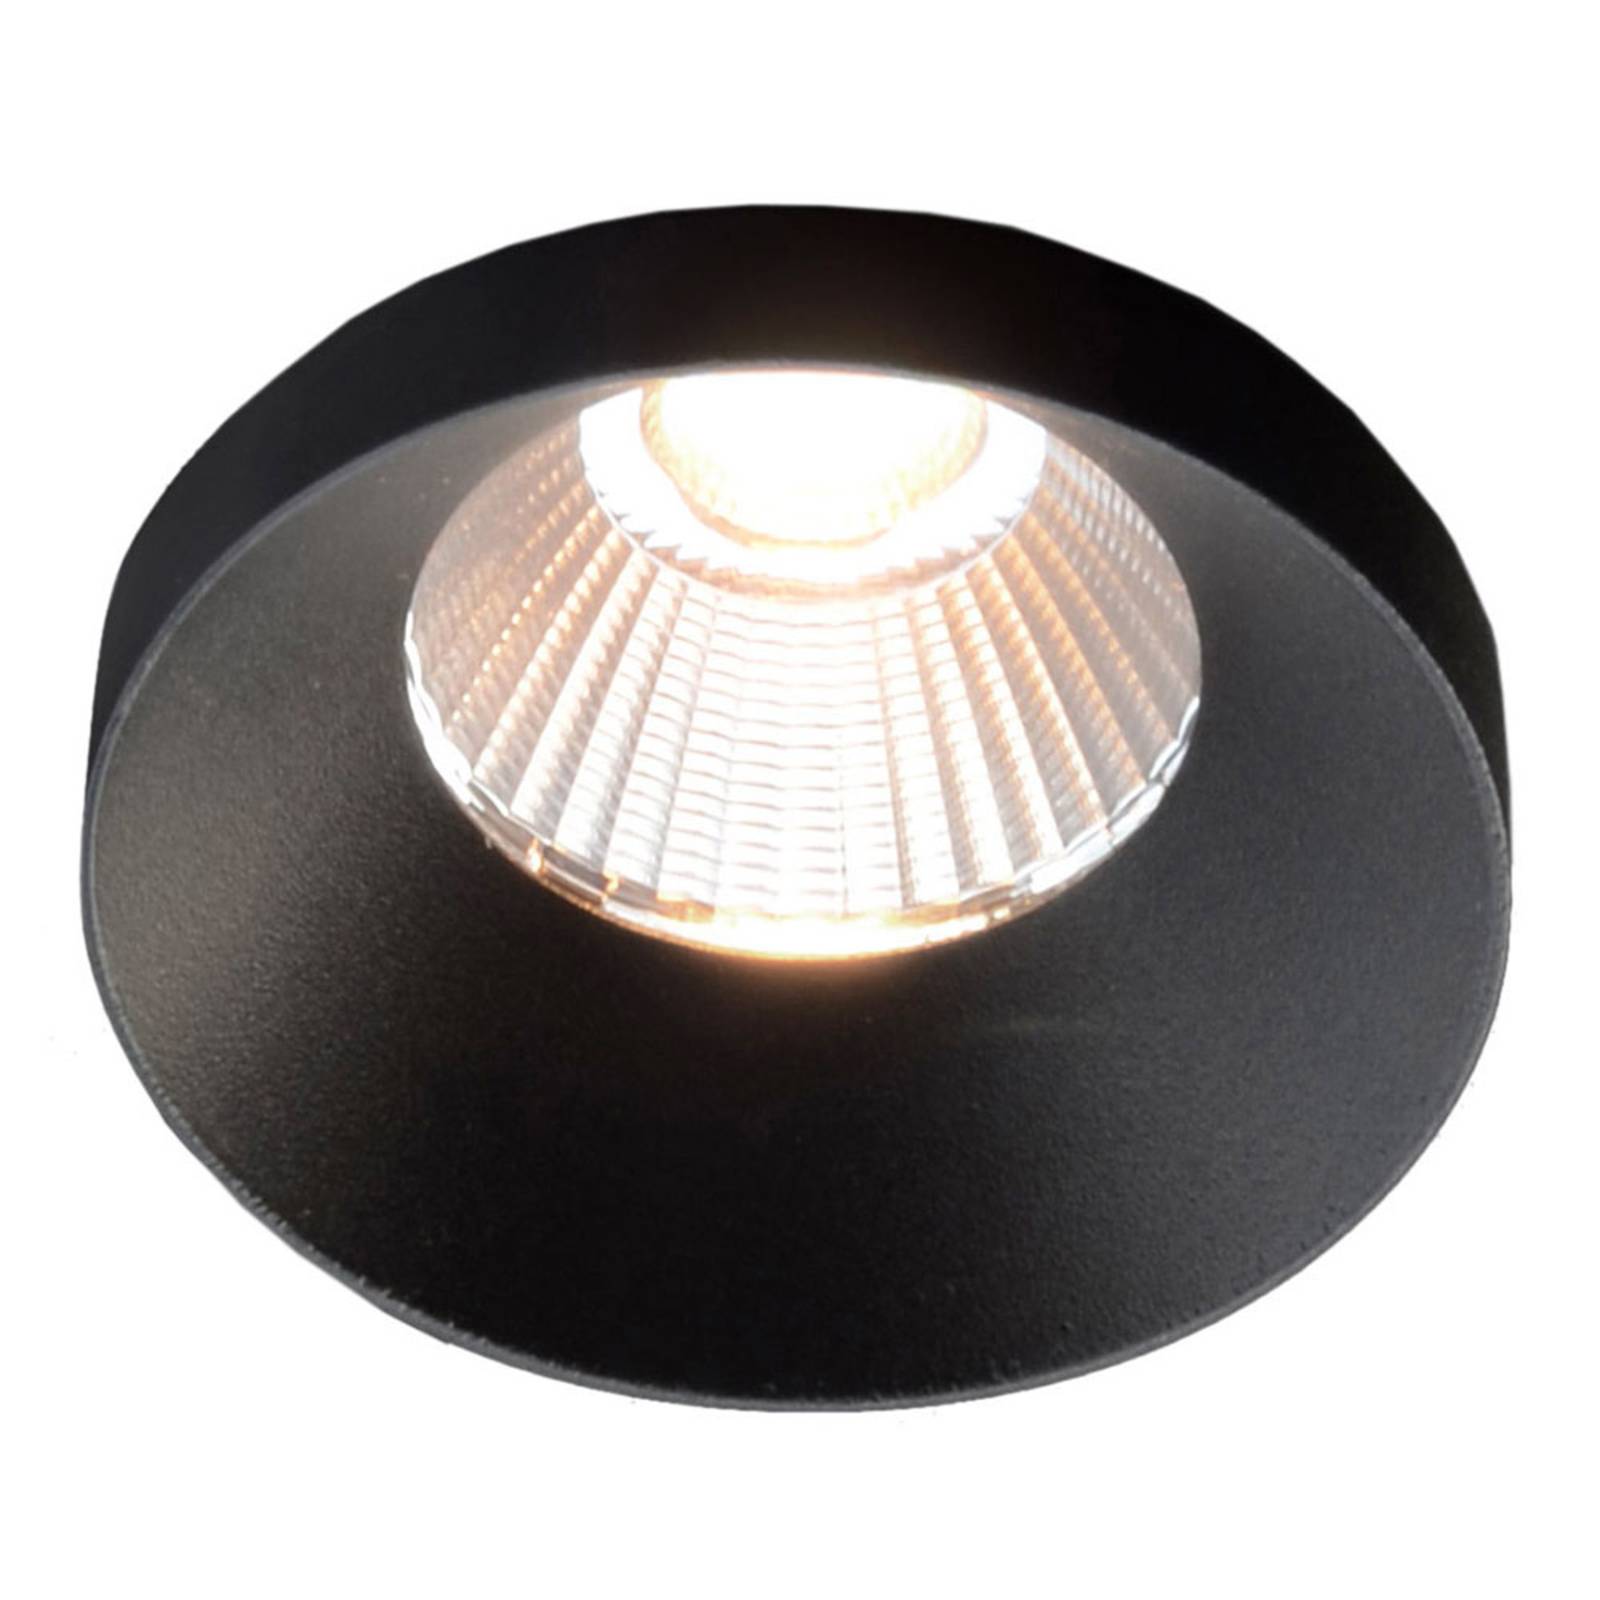 The Light Group GF design Owi Einbaulampe IP54 schwarz 3.000 K